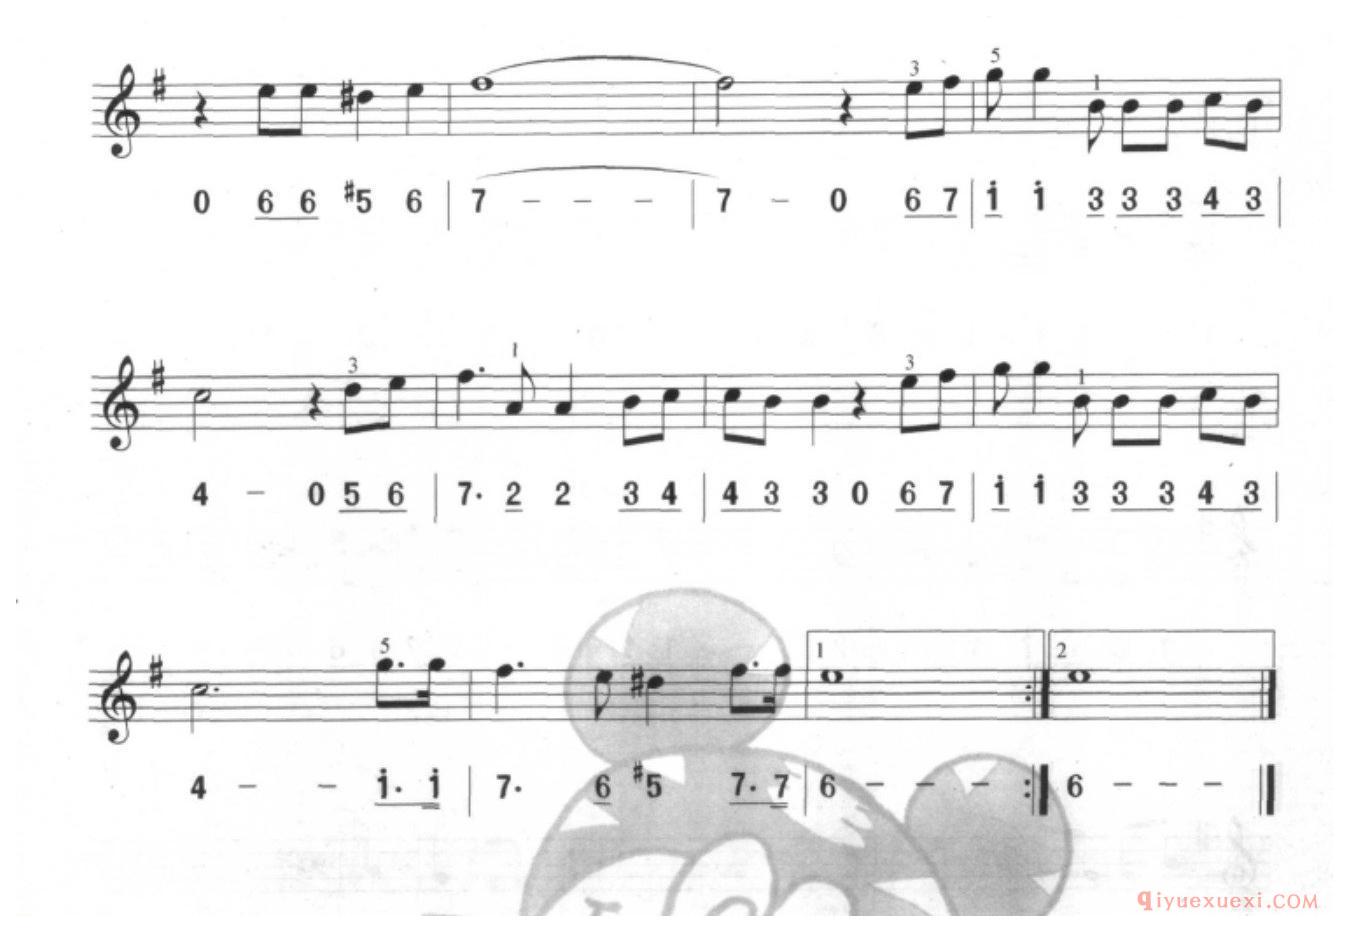 口风琴单声部乐曲《命运主题曲》一个升号调的练习